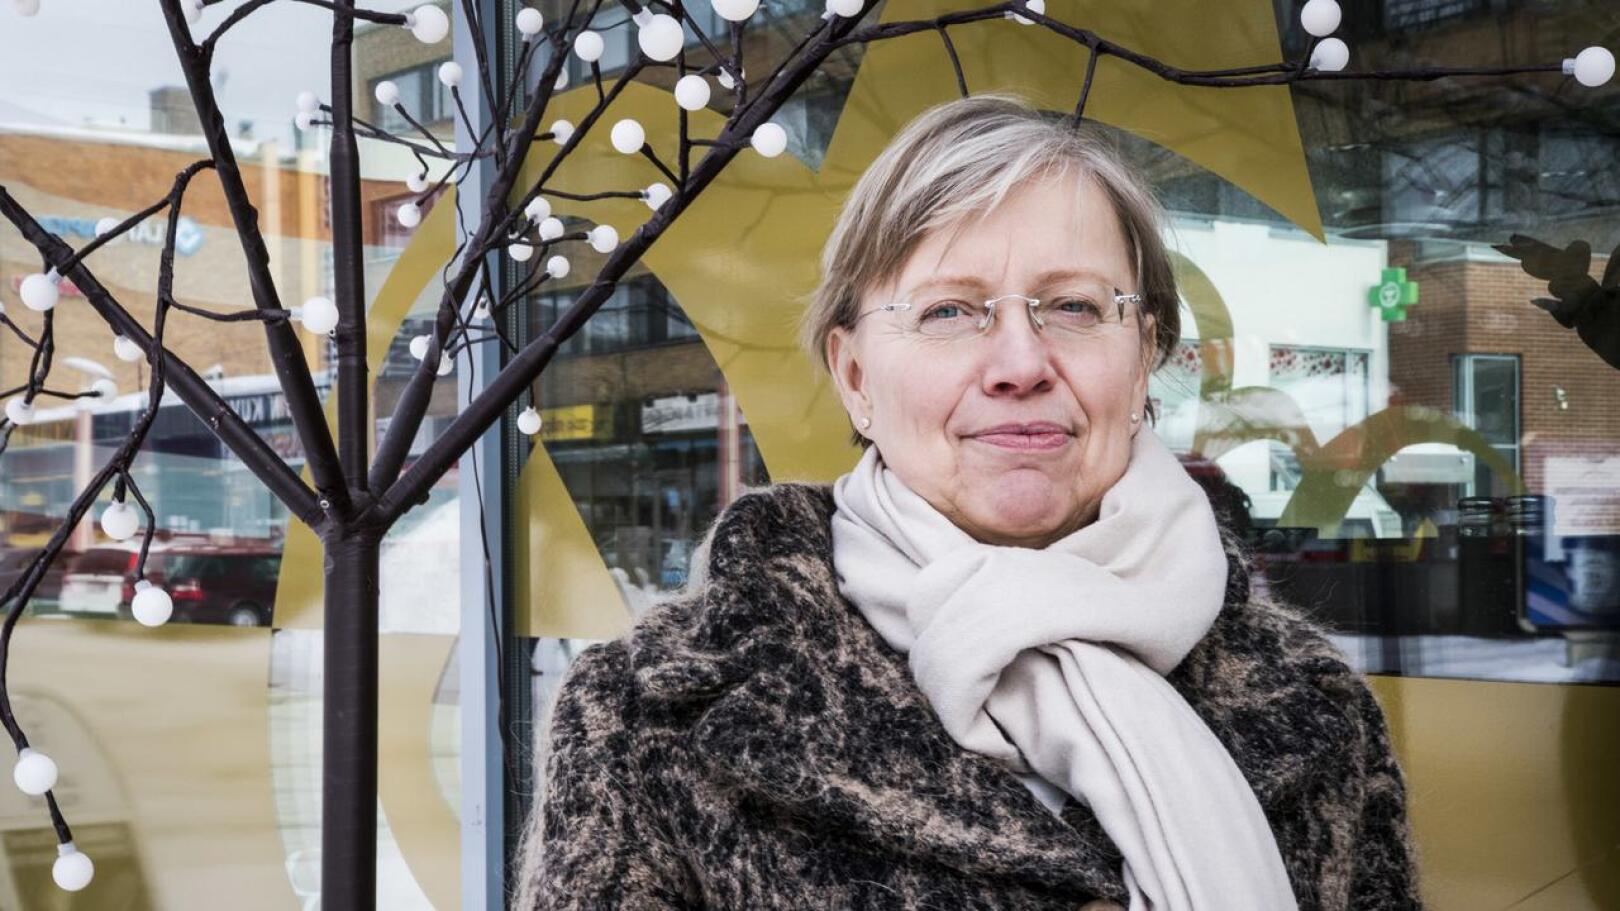 Eduskunnan apulaisoikeusasiamies Maija Sakslin on tehnyt selvityspyynnön sosiaali- ja terveysministeriölle, Valviralle ja THL:lle koskien hoivakotien vierailukieltoa.